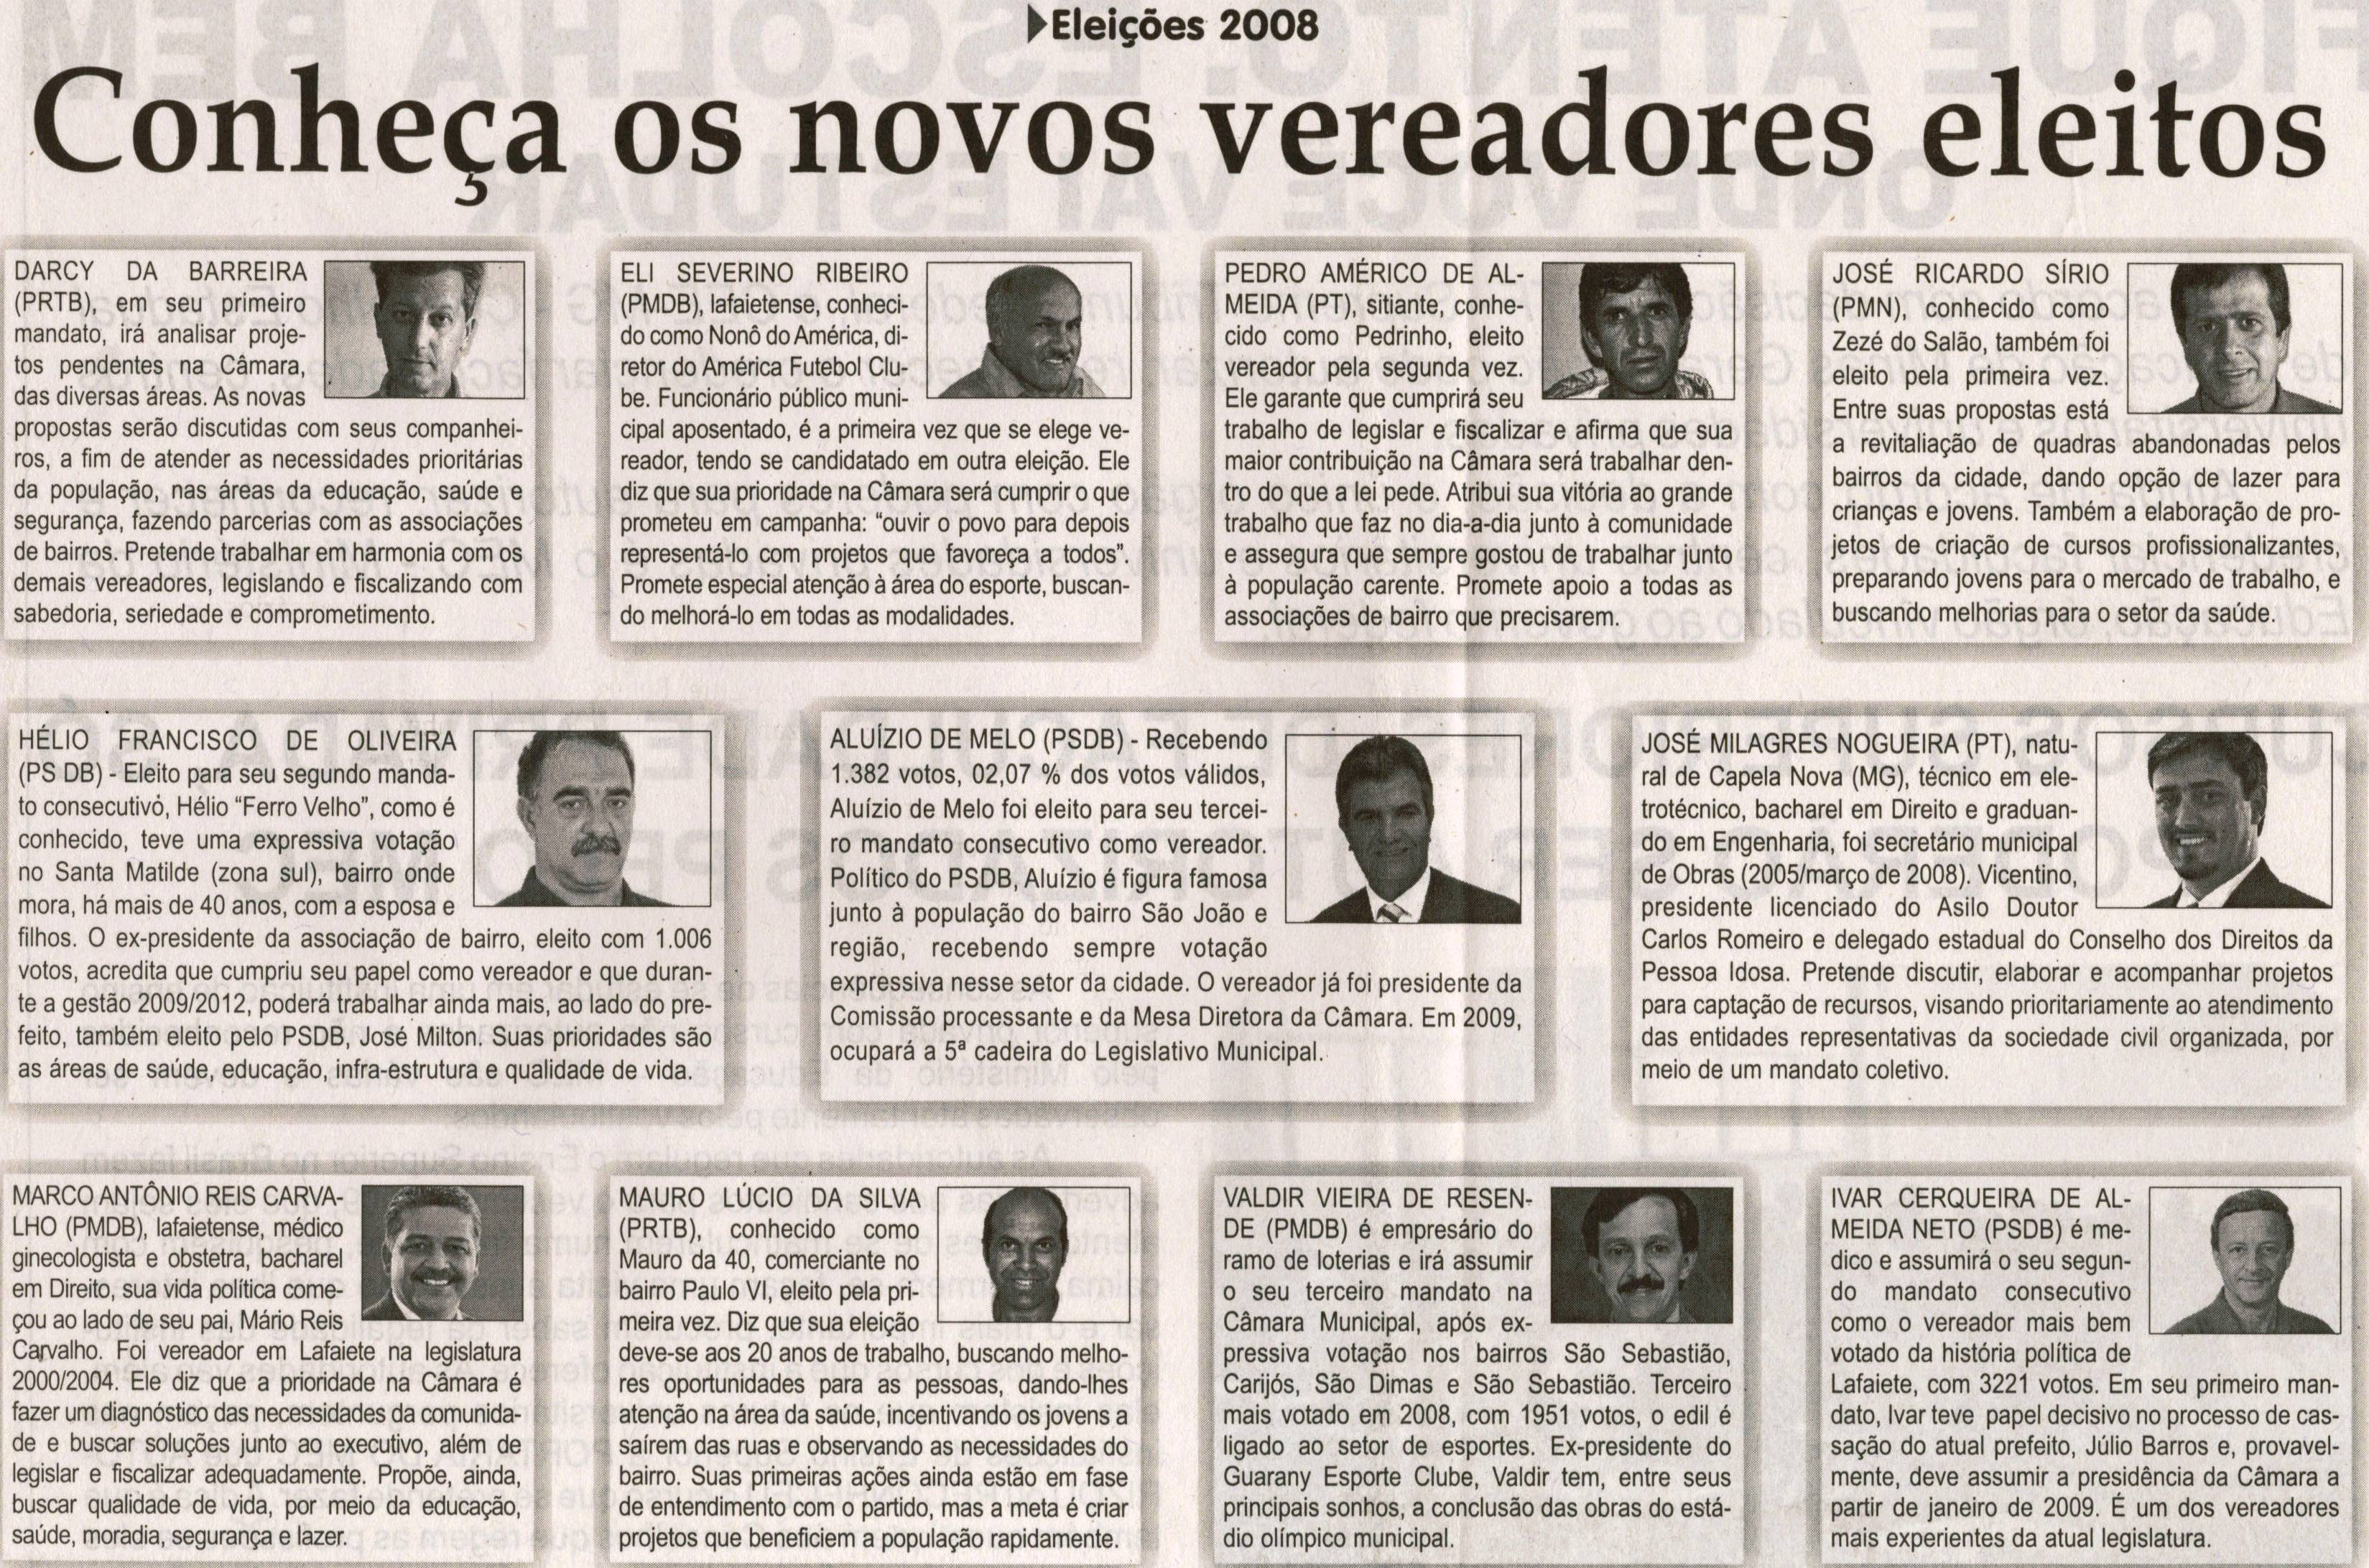 Eleições 2008: conheça os novos vereadores eleitos, Jornal Correio da Cidade, 11 out. 2008, p. 11.